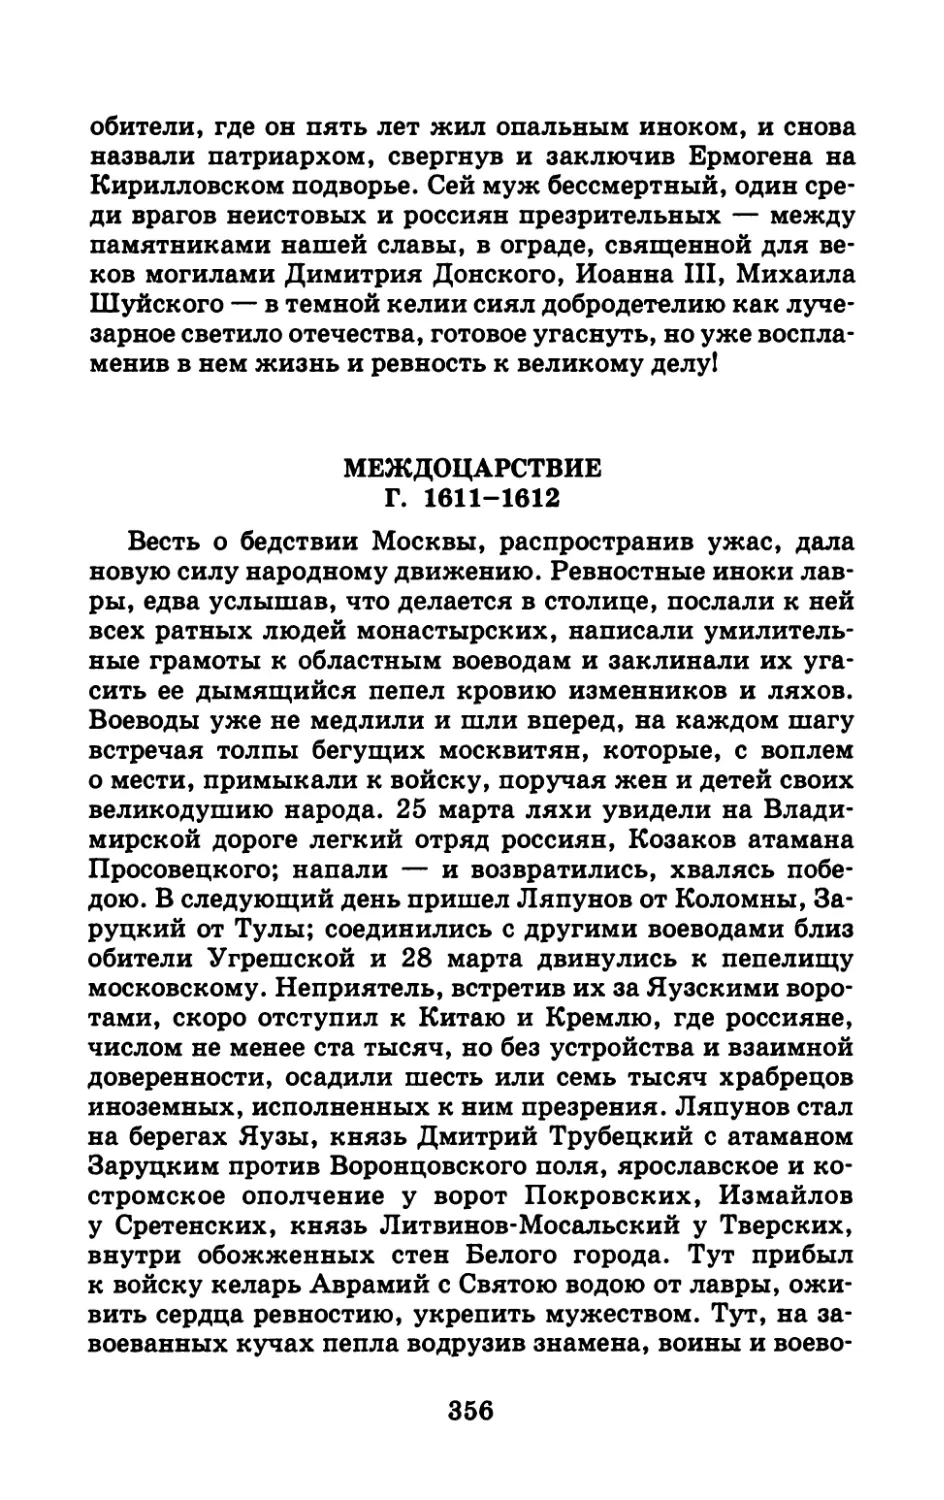 МЕЖДОЦАРСТВИЕ Г. 1611-1612